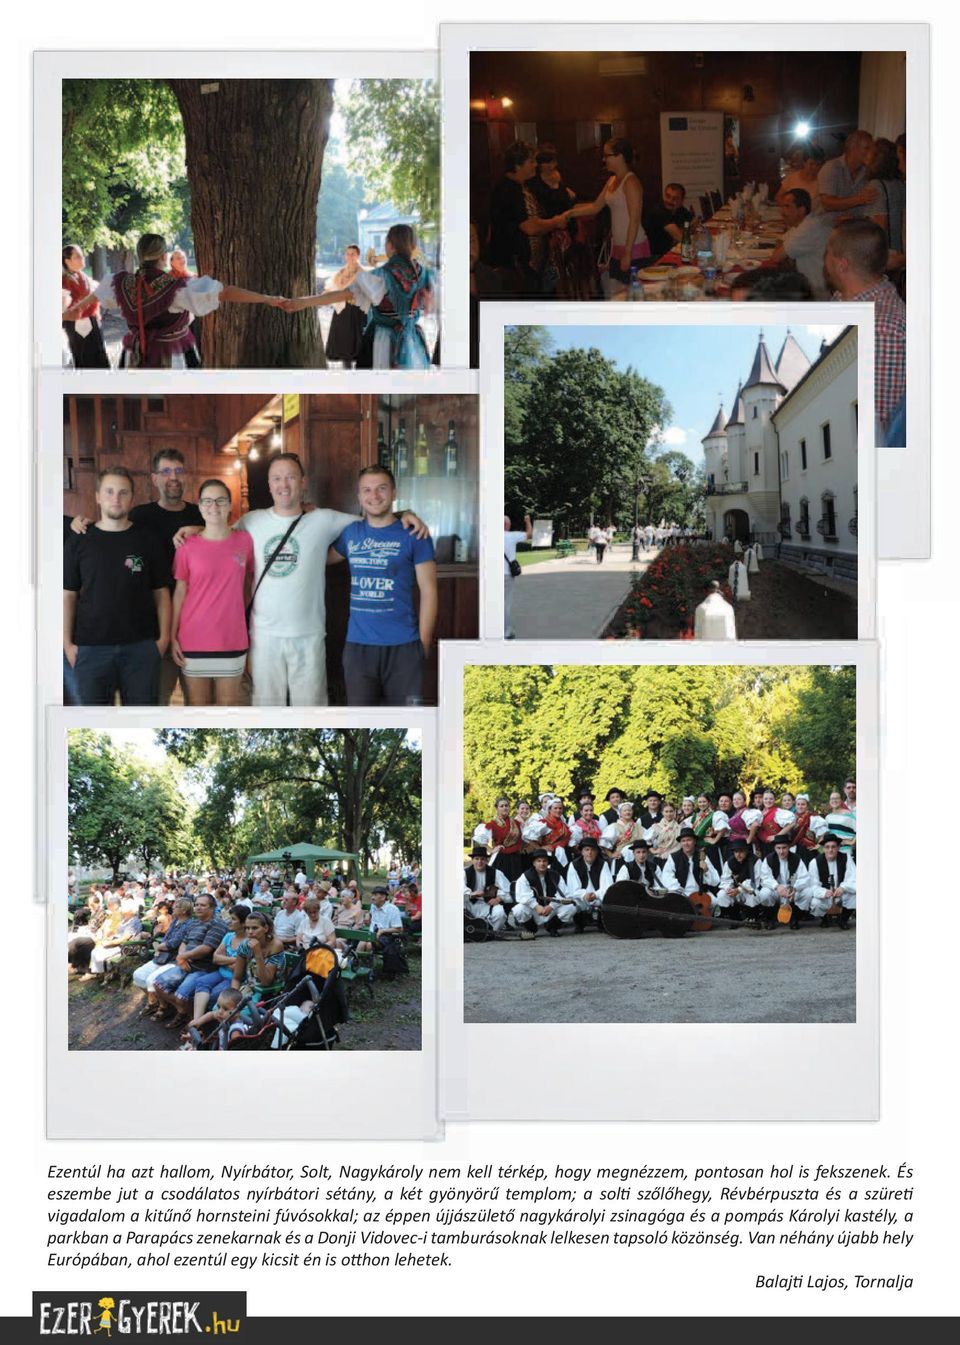 hornsteini fúvósokkal; az éppen újjászülető nagykárolyi zsinagóga és a pompás Károlyi kastély, a parkban a Parapács zenekarnak és a